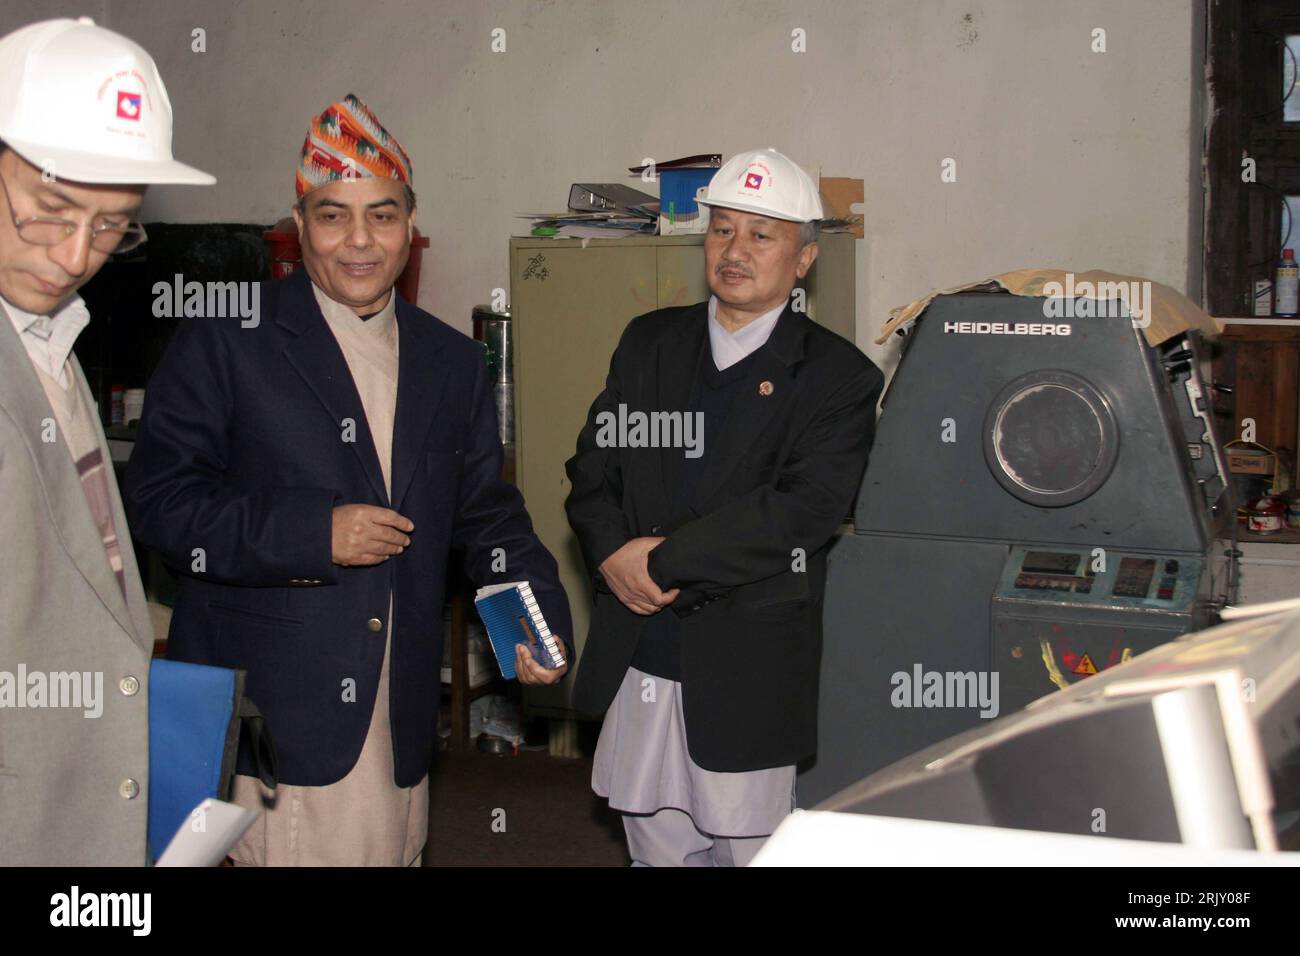 Bildnummer: 52389667  Datum: 10.02.2008  Copyright: imago/Xinhua Bhoj Raj Pokharel (Mitte, Nepal/Chef der Wahlkommission) und Subash Nemwang (re., Nepal/Parlamentssprecher) anlässlich eines Treffens in den Räumen der Wahlkommission - Vorbereitungen auf die Wahl der verfassungsgebenden Versammlung in Kathmandu  PUBLICATIONxNOTxINxCHN , Personen; 2008, Kathmandu, Politik, Politiker, Wahlen,   premiumd; , quer, Kbdig, Gruppenbild,  , People Stock Photo